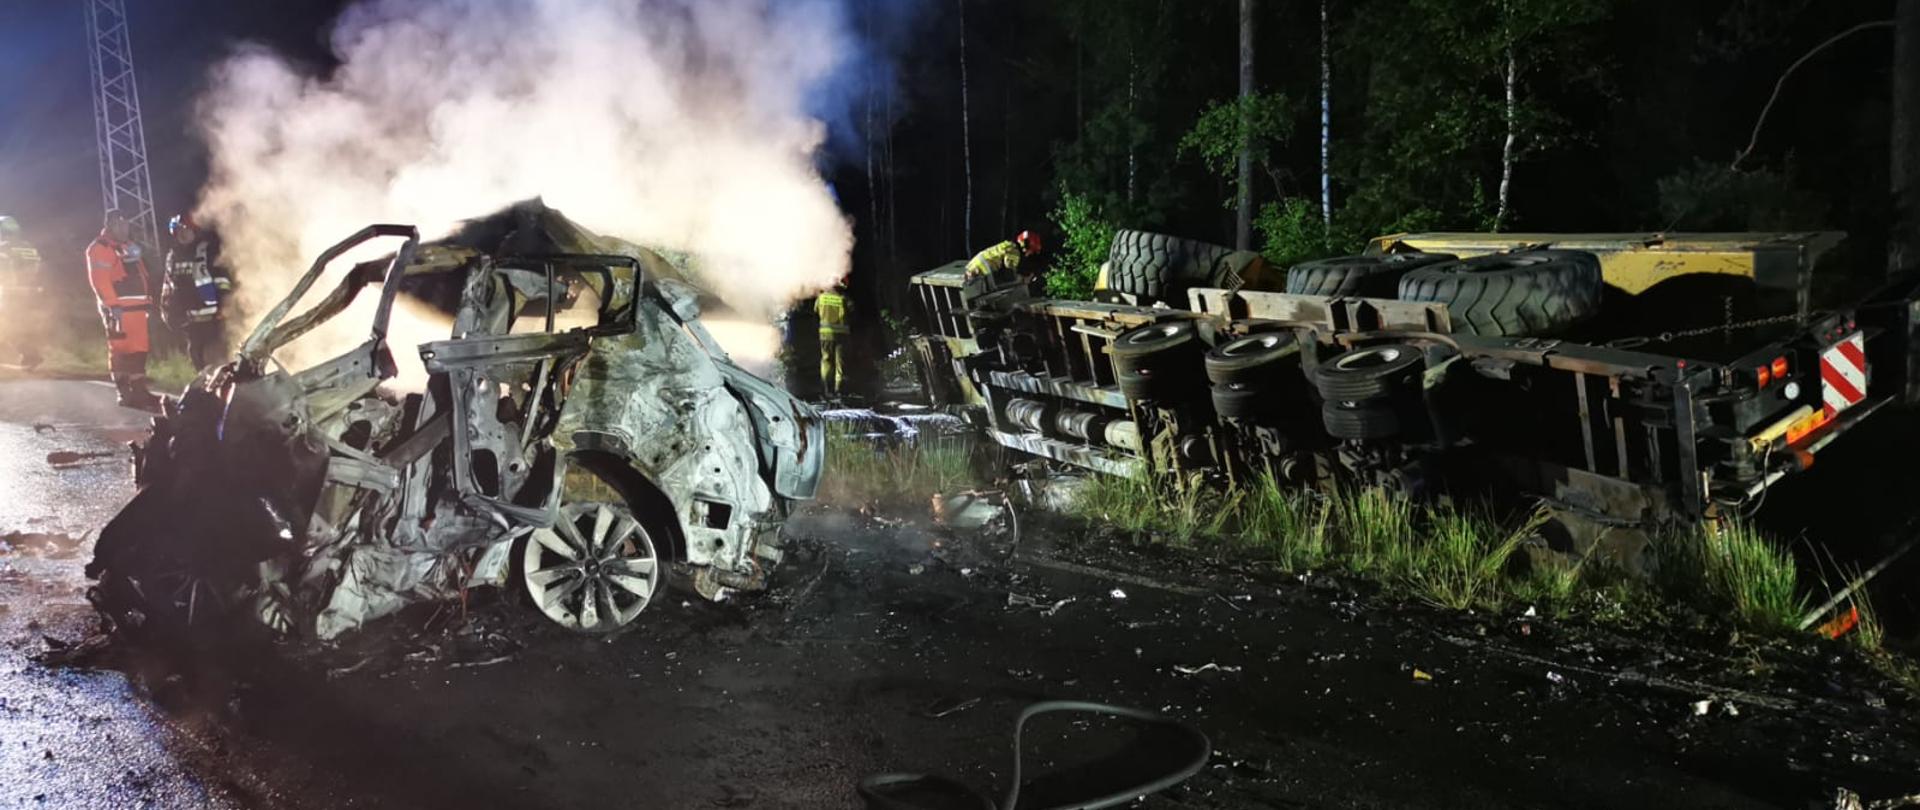 Zdjęcie przedstawia działania służb ratowniczych po wypadku i pożarze na drodze wojewódzkiej koło Wierchlesia. Zdjęcie wykonane w porze nocnej.